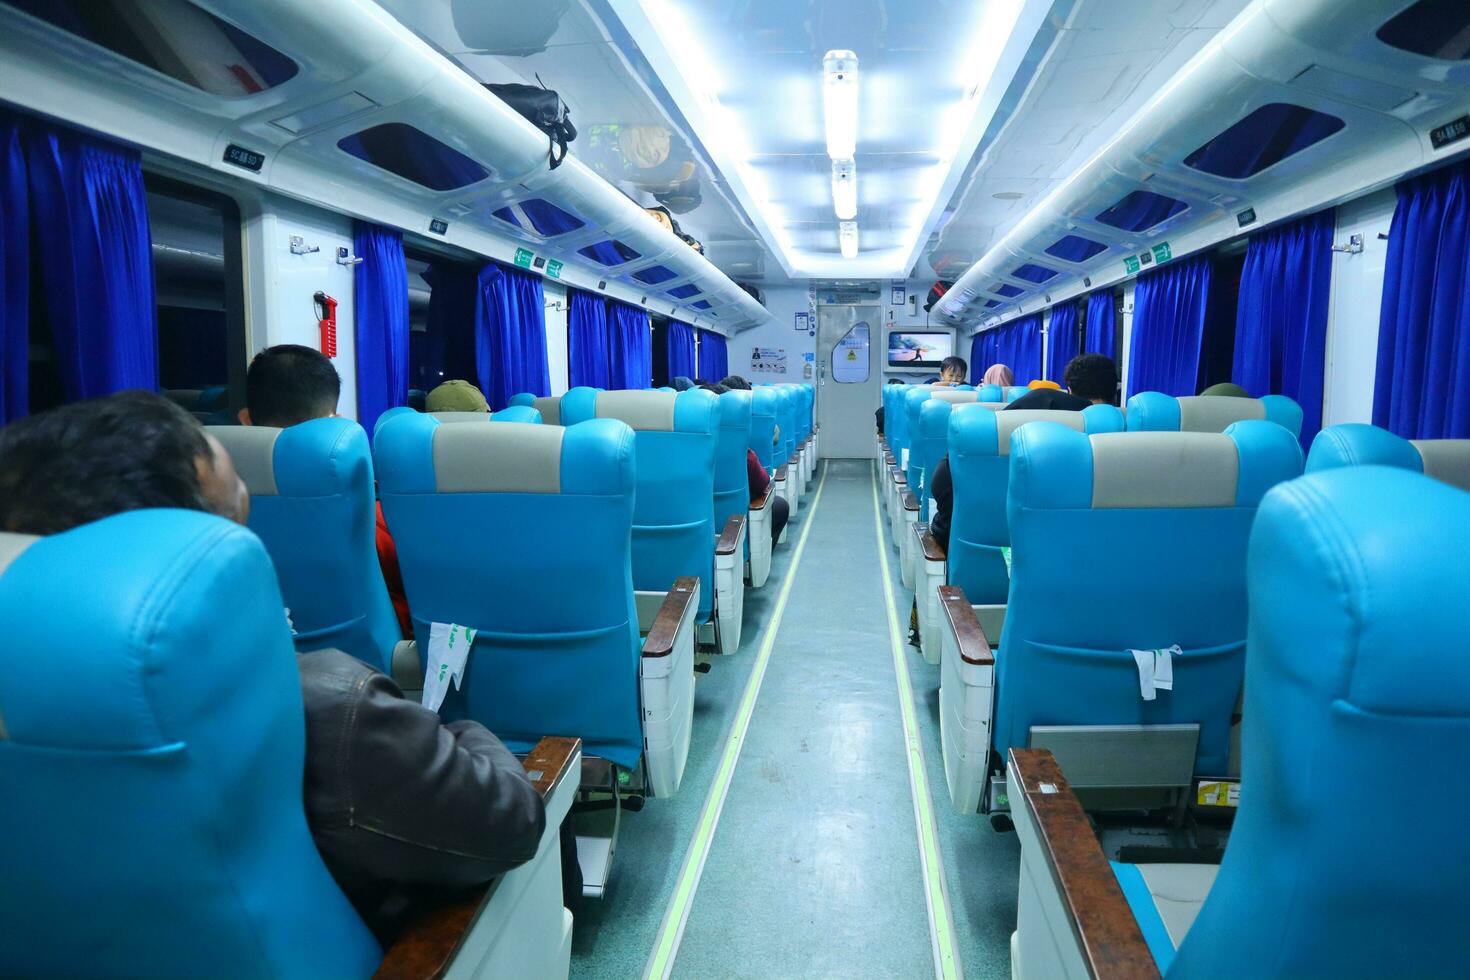 uitvoerend klasse trein interieur met blauw stoelen, armleuningen, bagage rekken, toezicht houden op schermen, lucht conditionering, en lichten dat uitbreiden Aan de plafond foto